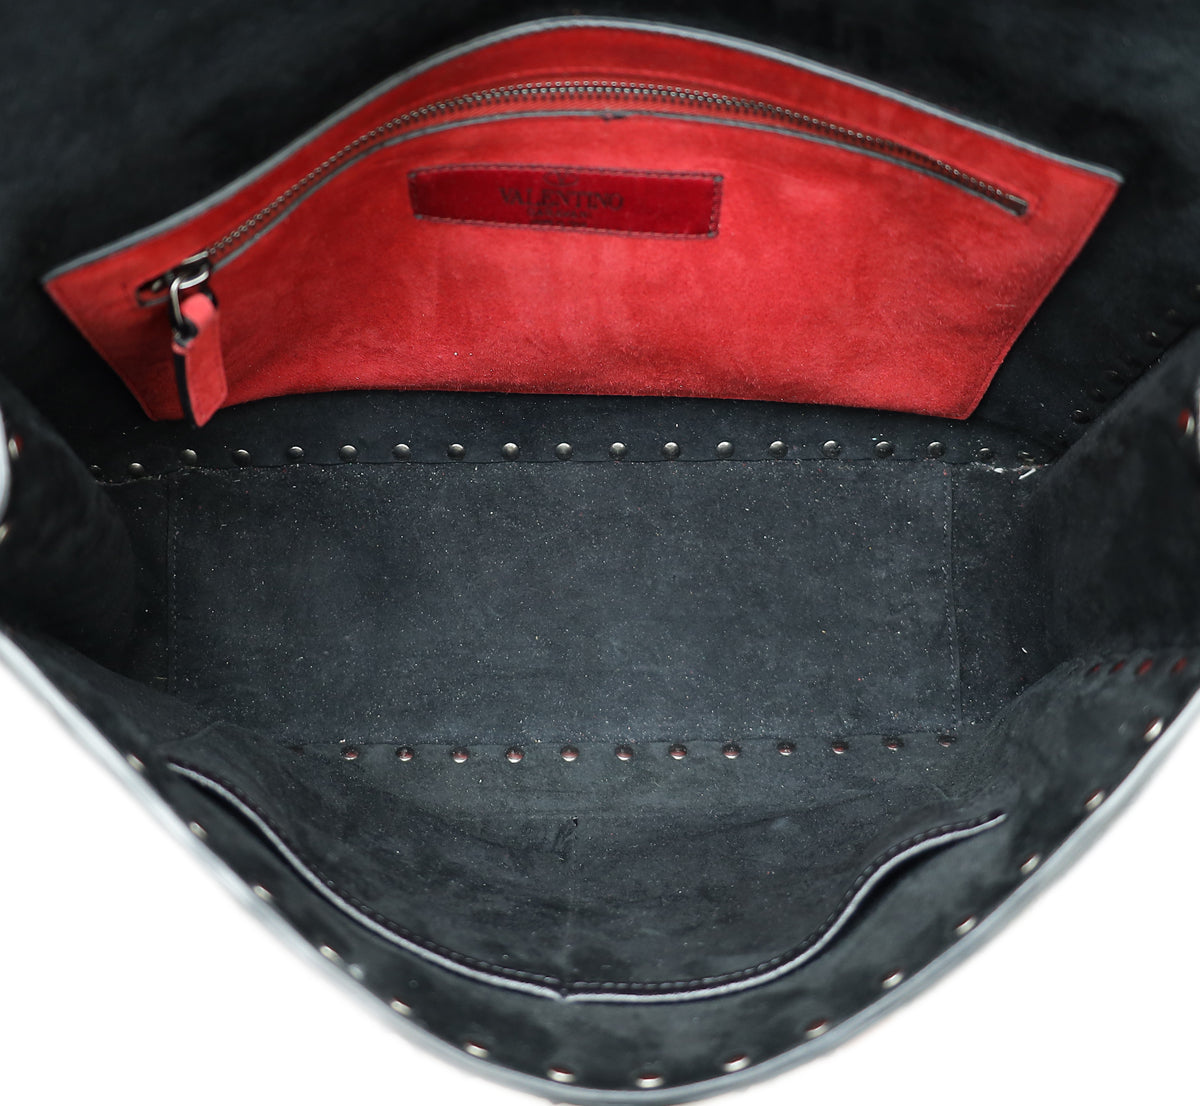 Valentino Black Spike Rockstud Flap Large Shoulder Bag